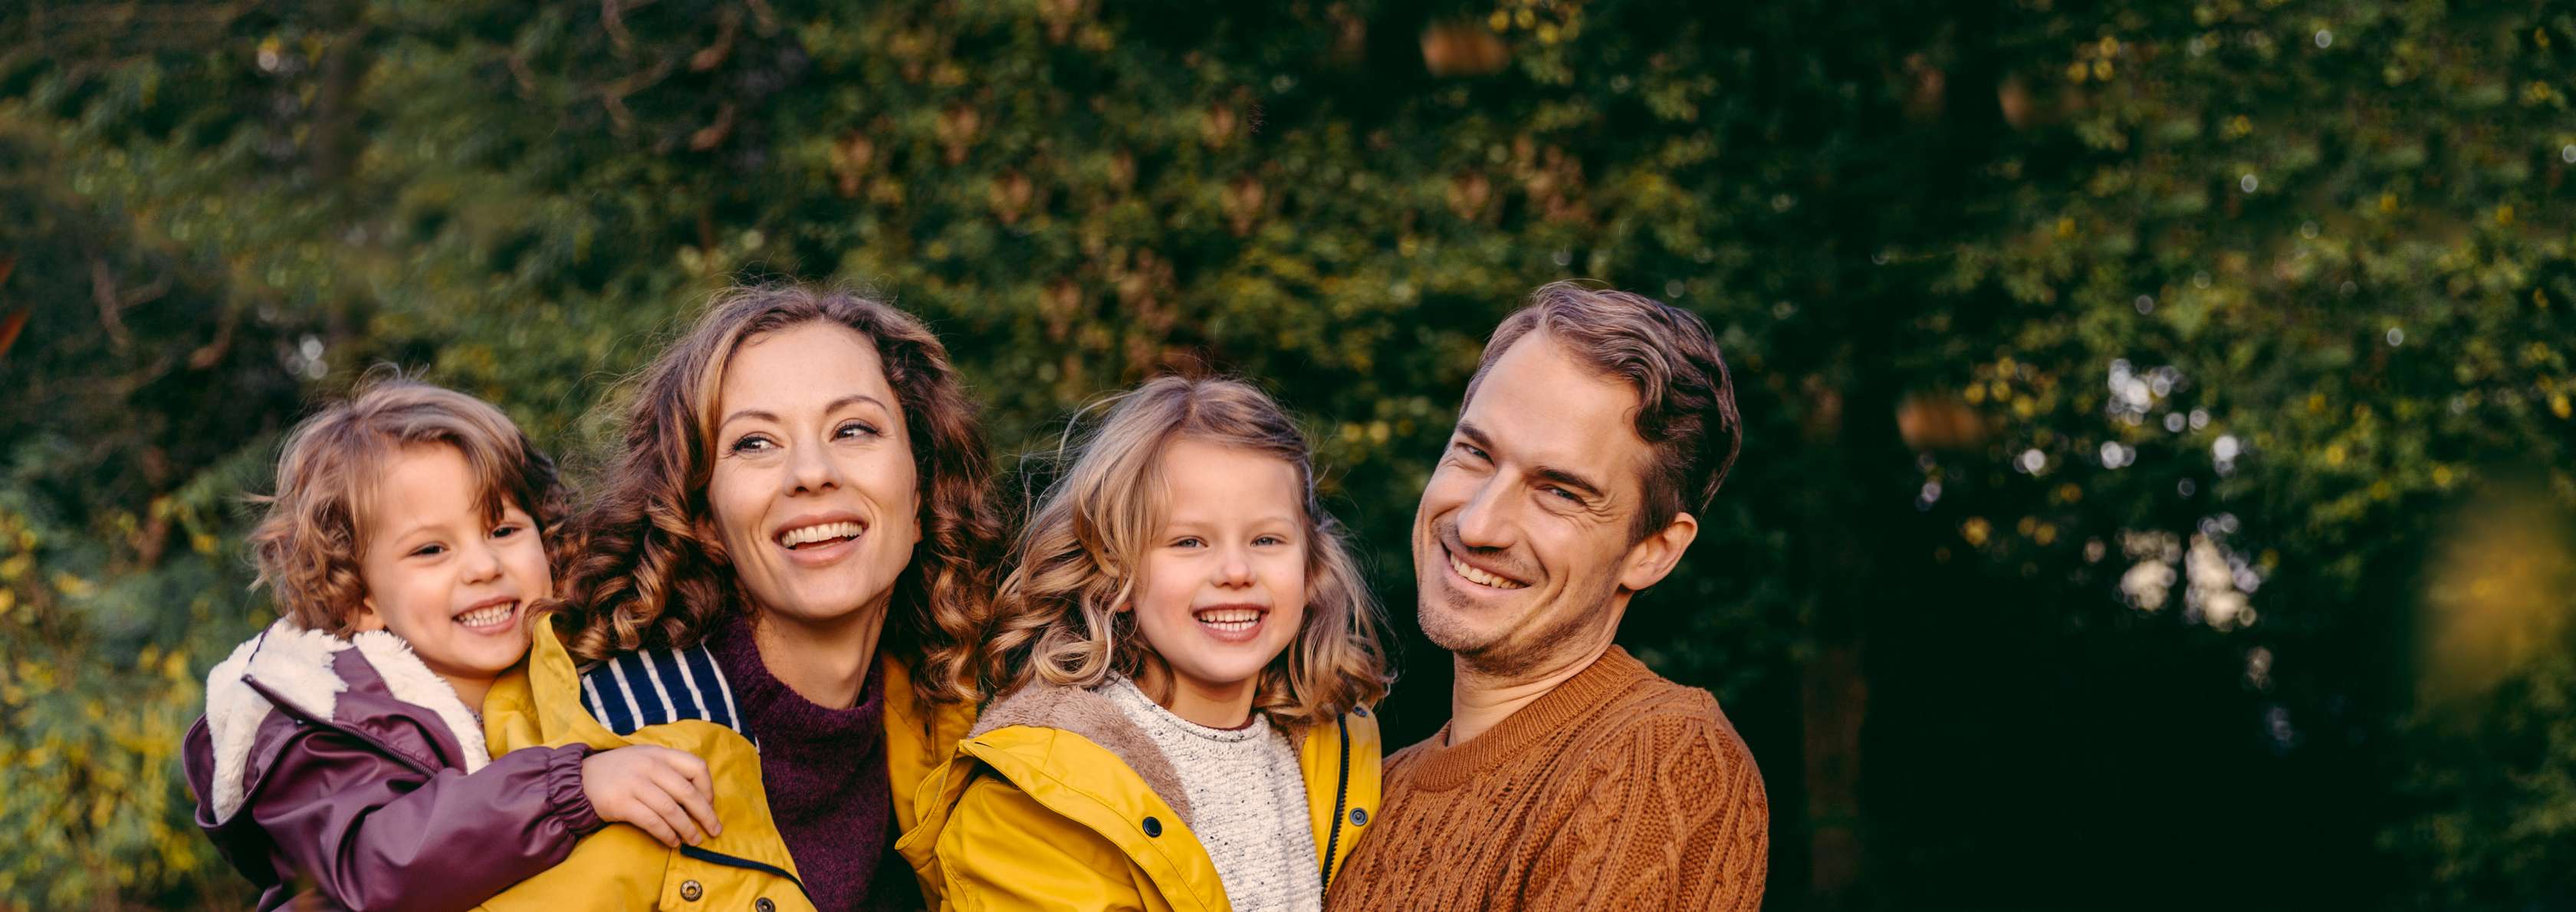 Familie mit Frau, Mann und zwei Kindern steht auf einer grünen Wiese und lächelt in die Kamera